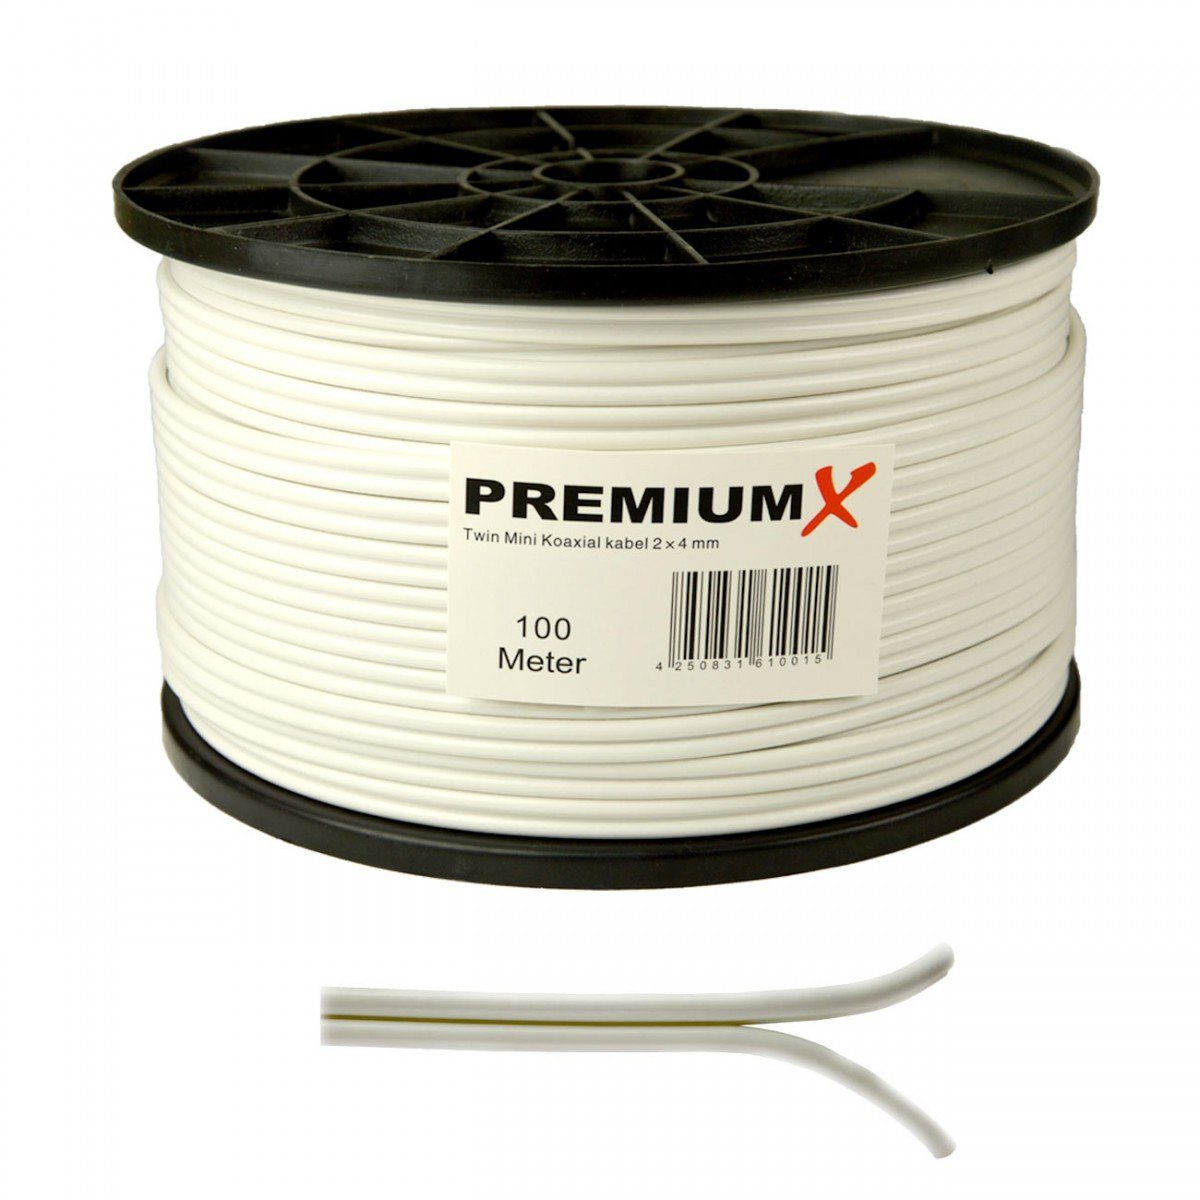 PremiumX Twini Mini 100m Kabel KoaxialKabel weiß 2x4mm SAT-Kabel in mit F-Stecker